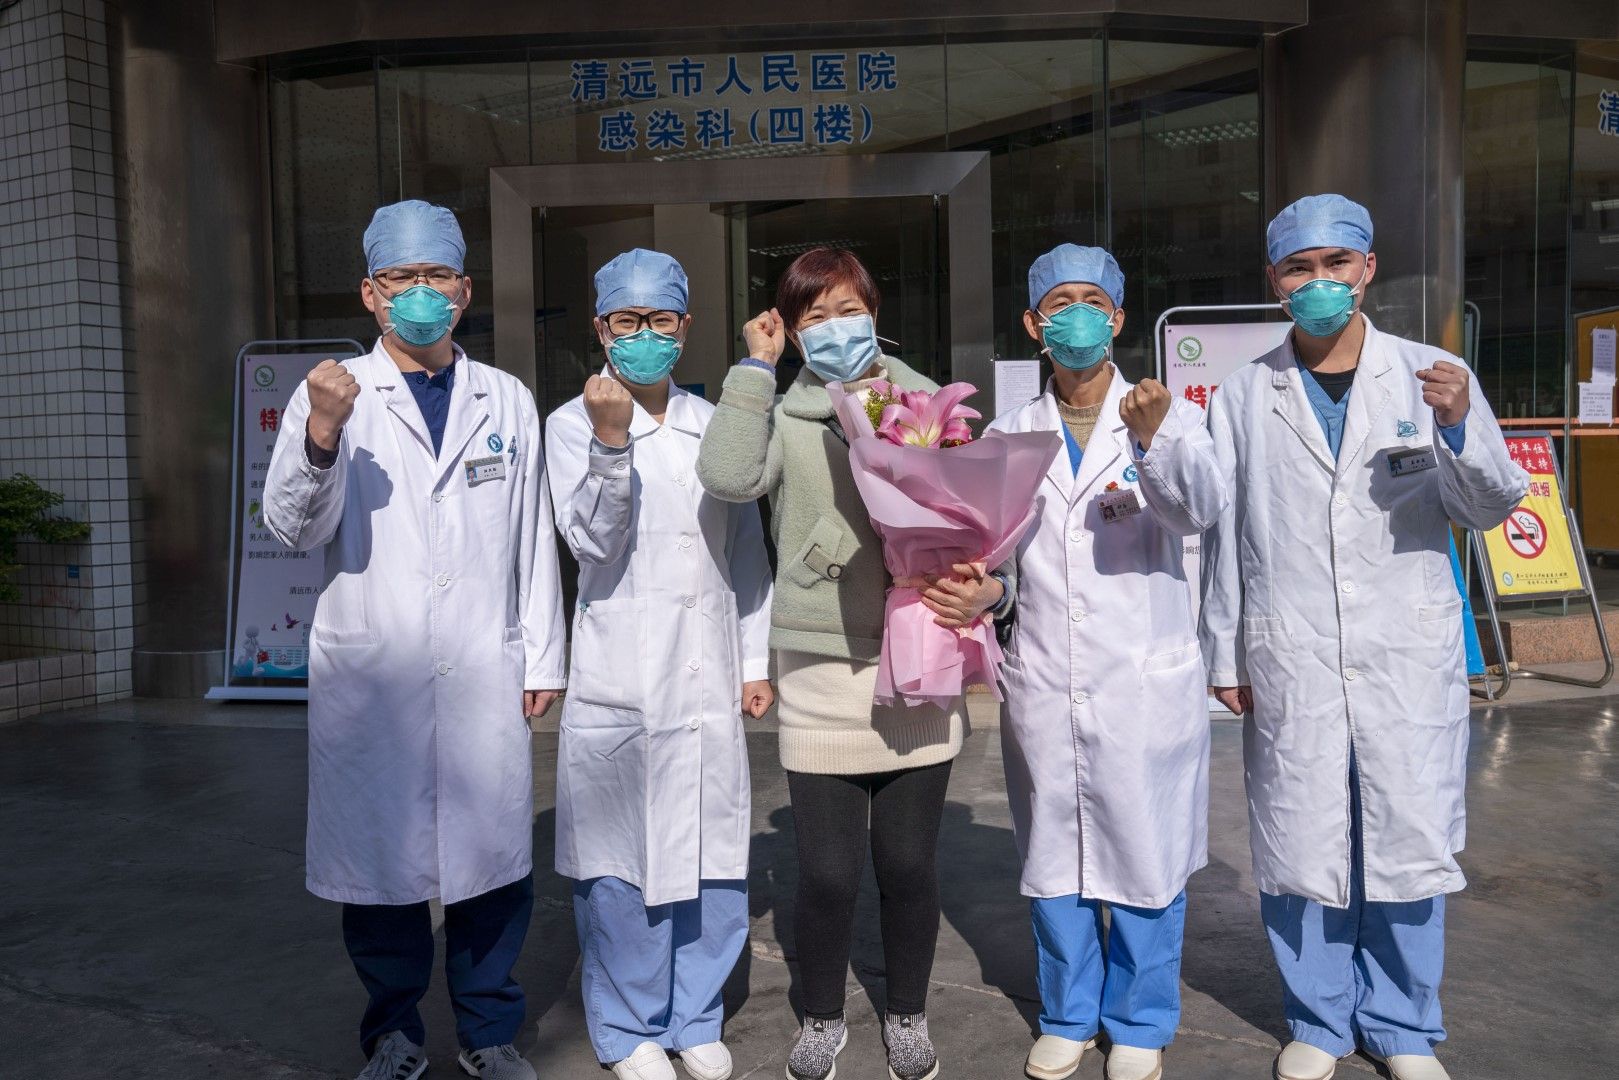 Излекуван пациент от заболяване, причинено от новия коронавирус, позира с медици пред болница в китайски град, 30 януари